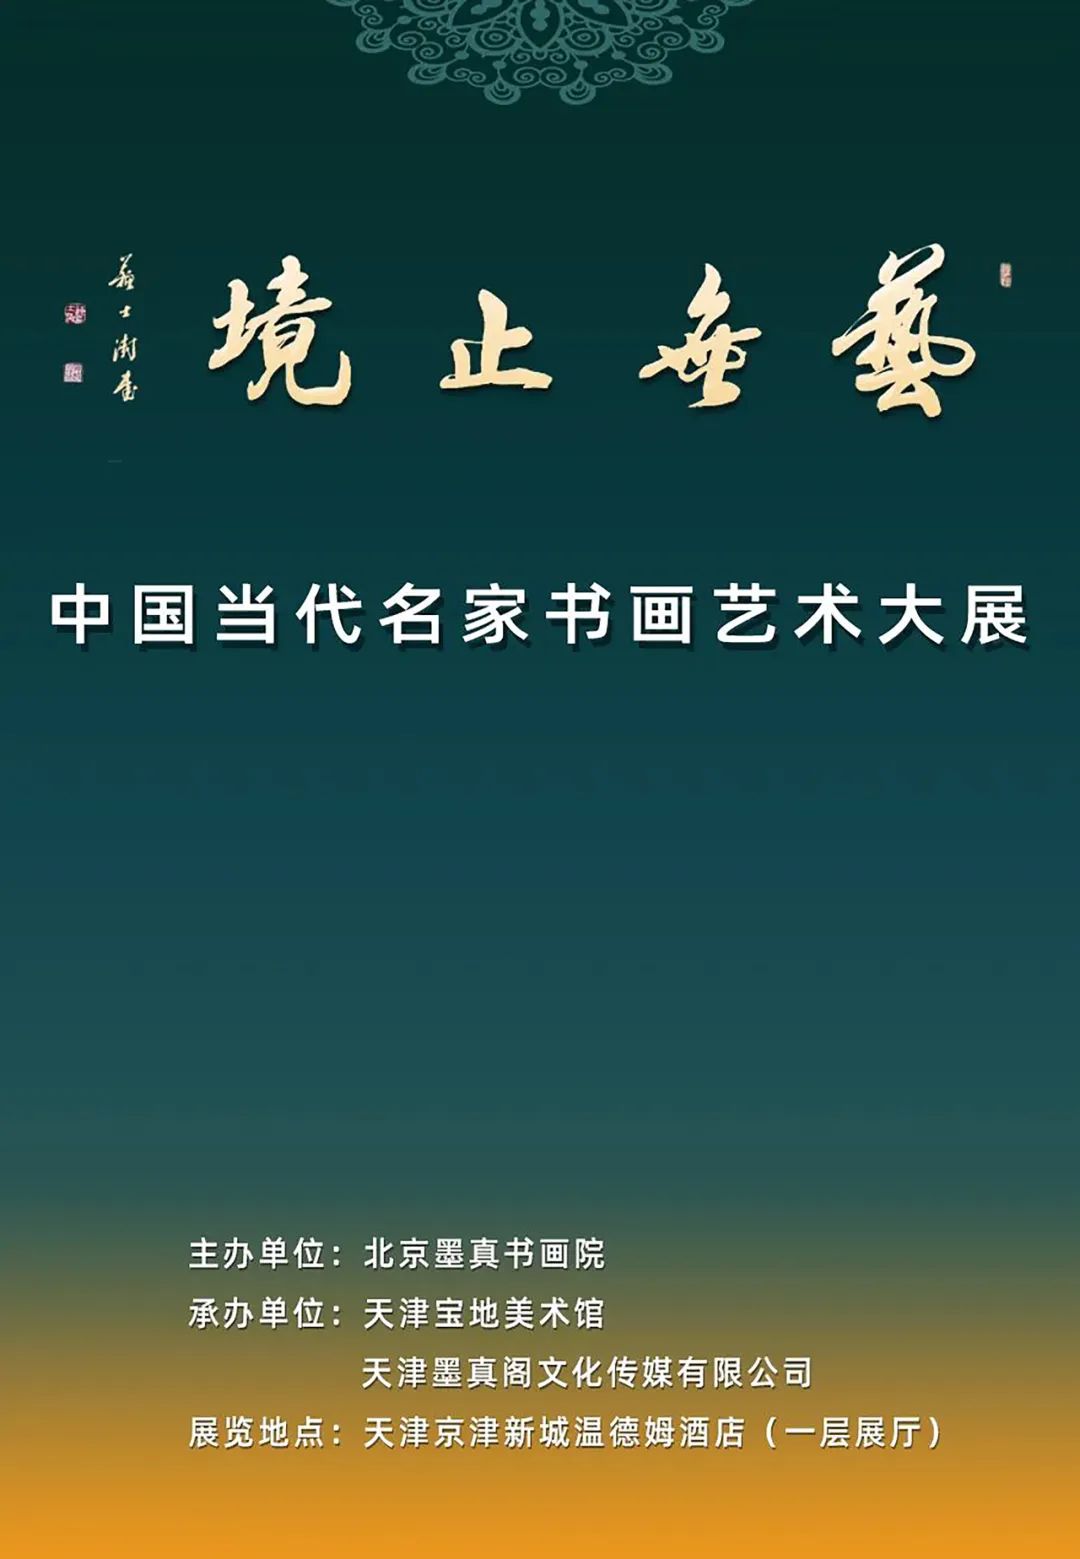 著名画家于文江应邀参展“艺无止境-中国当代名家书画艺术大展”，展现温暖的高原